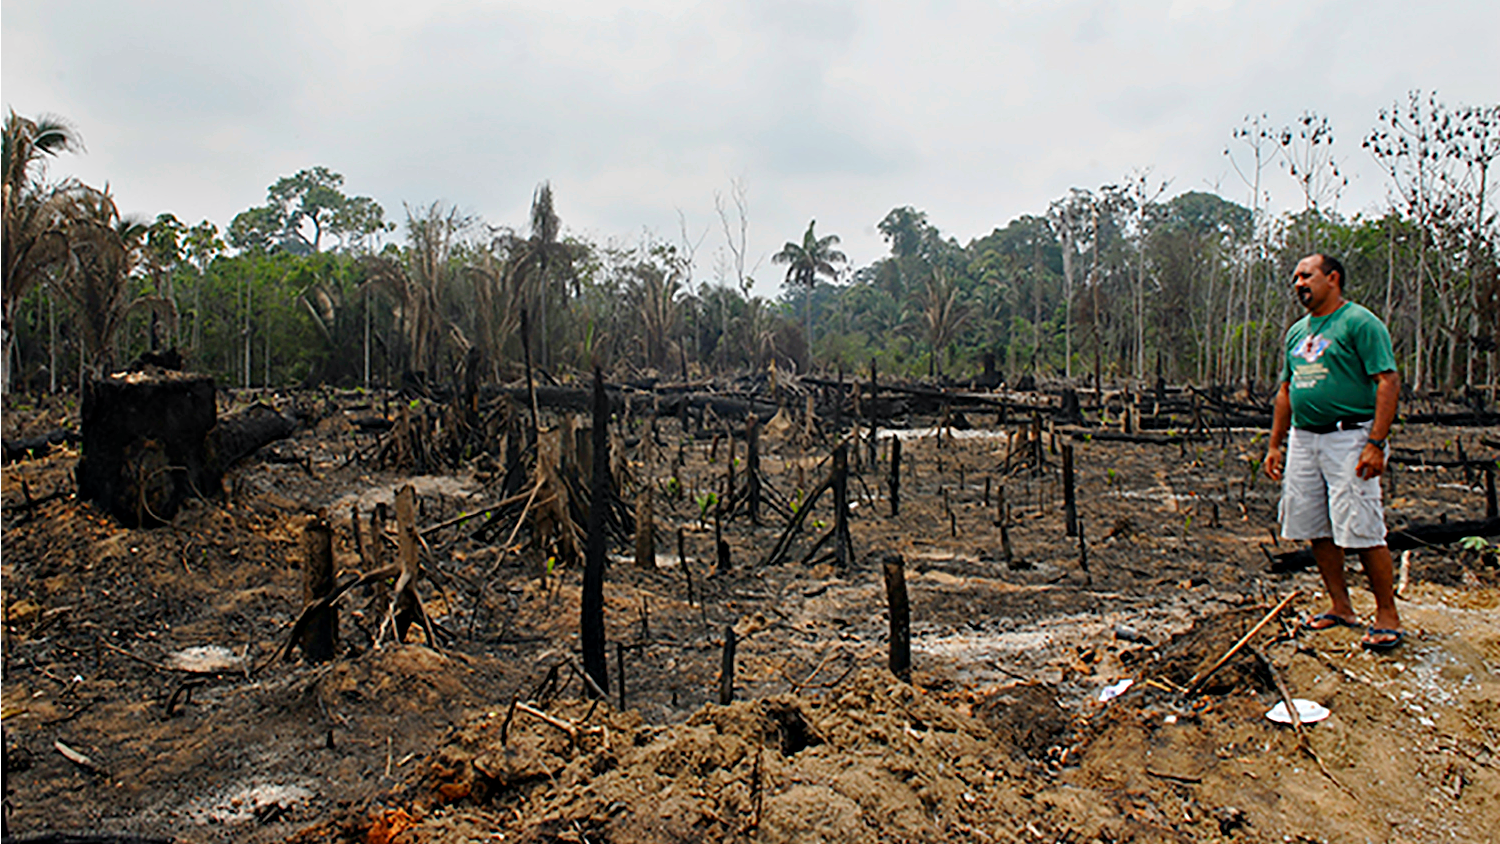 La déforestation ravage l'Amazonie et menace la survie des populations indigènes | © Jean-Claude Gerez 